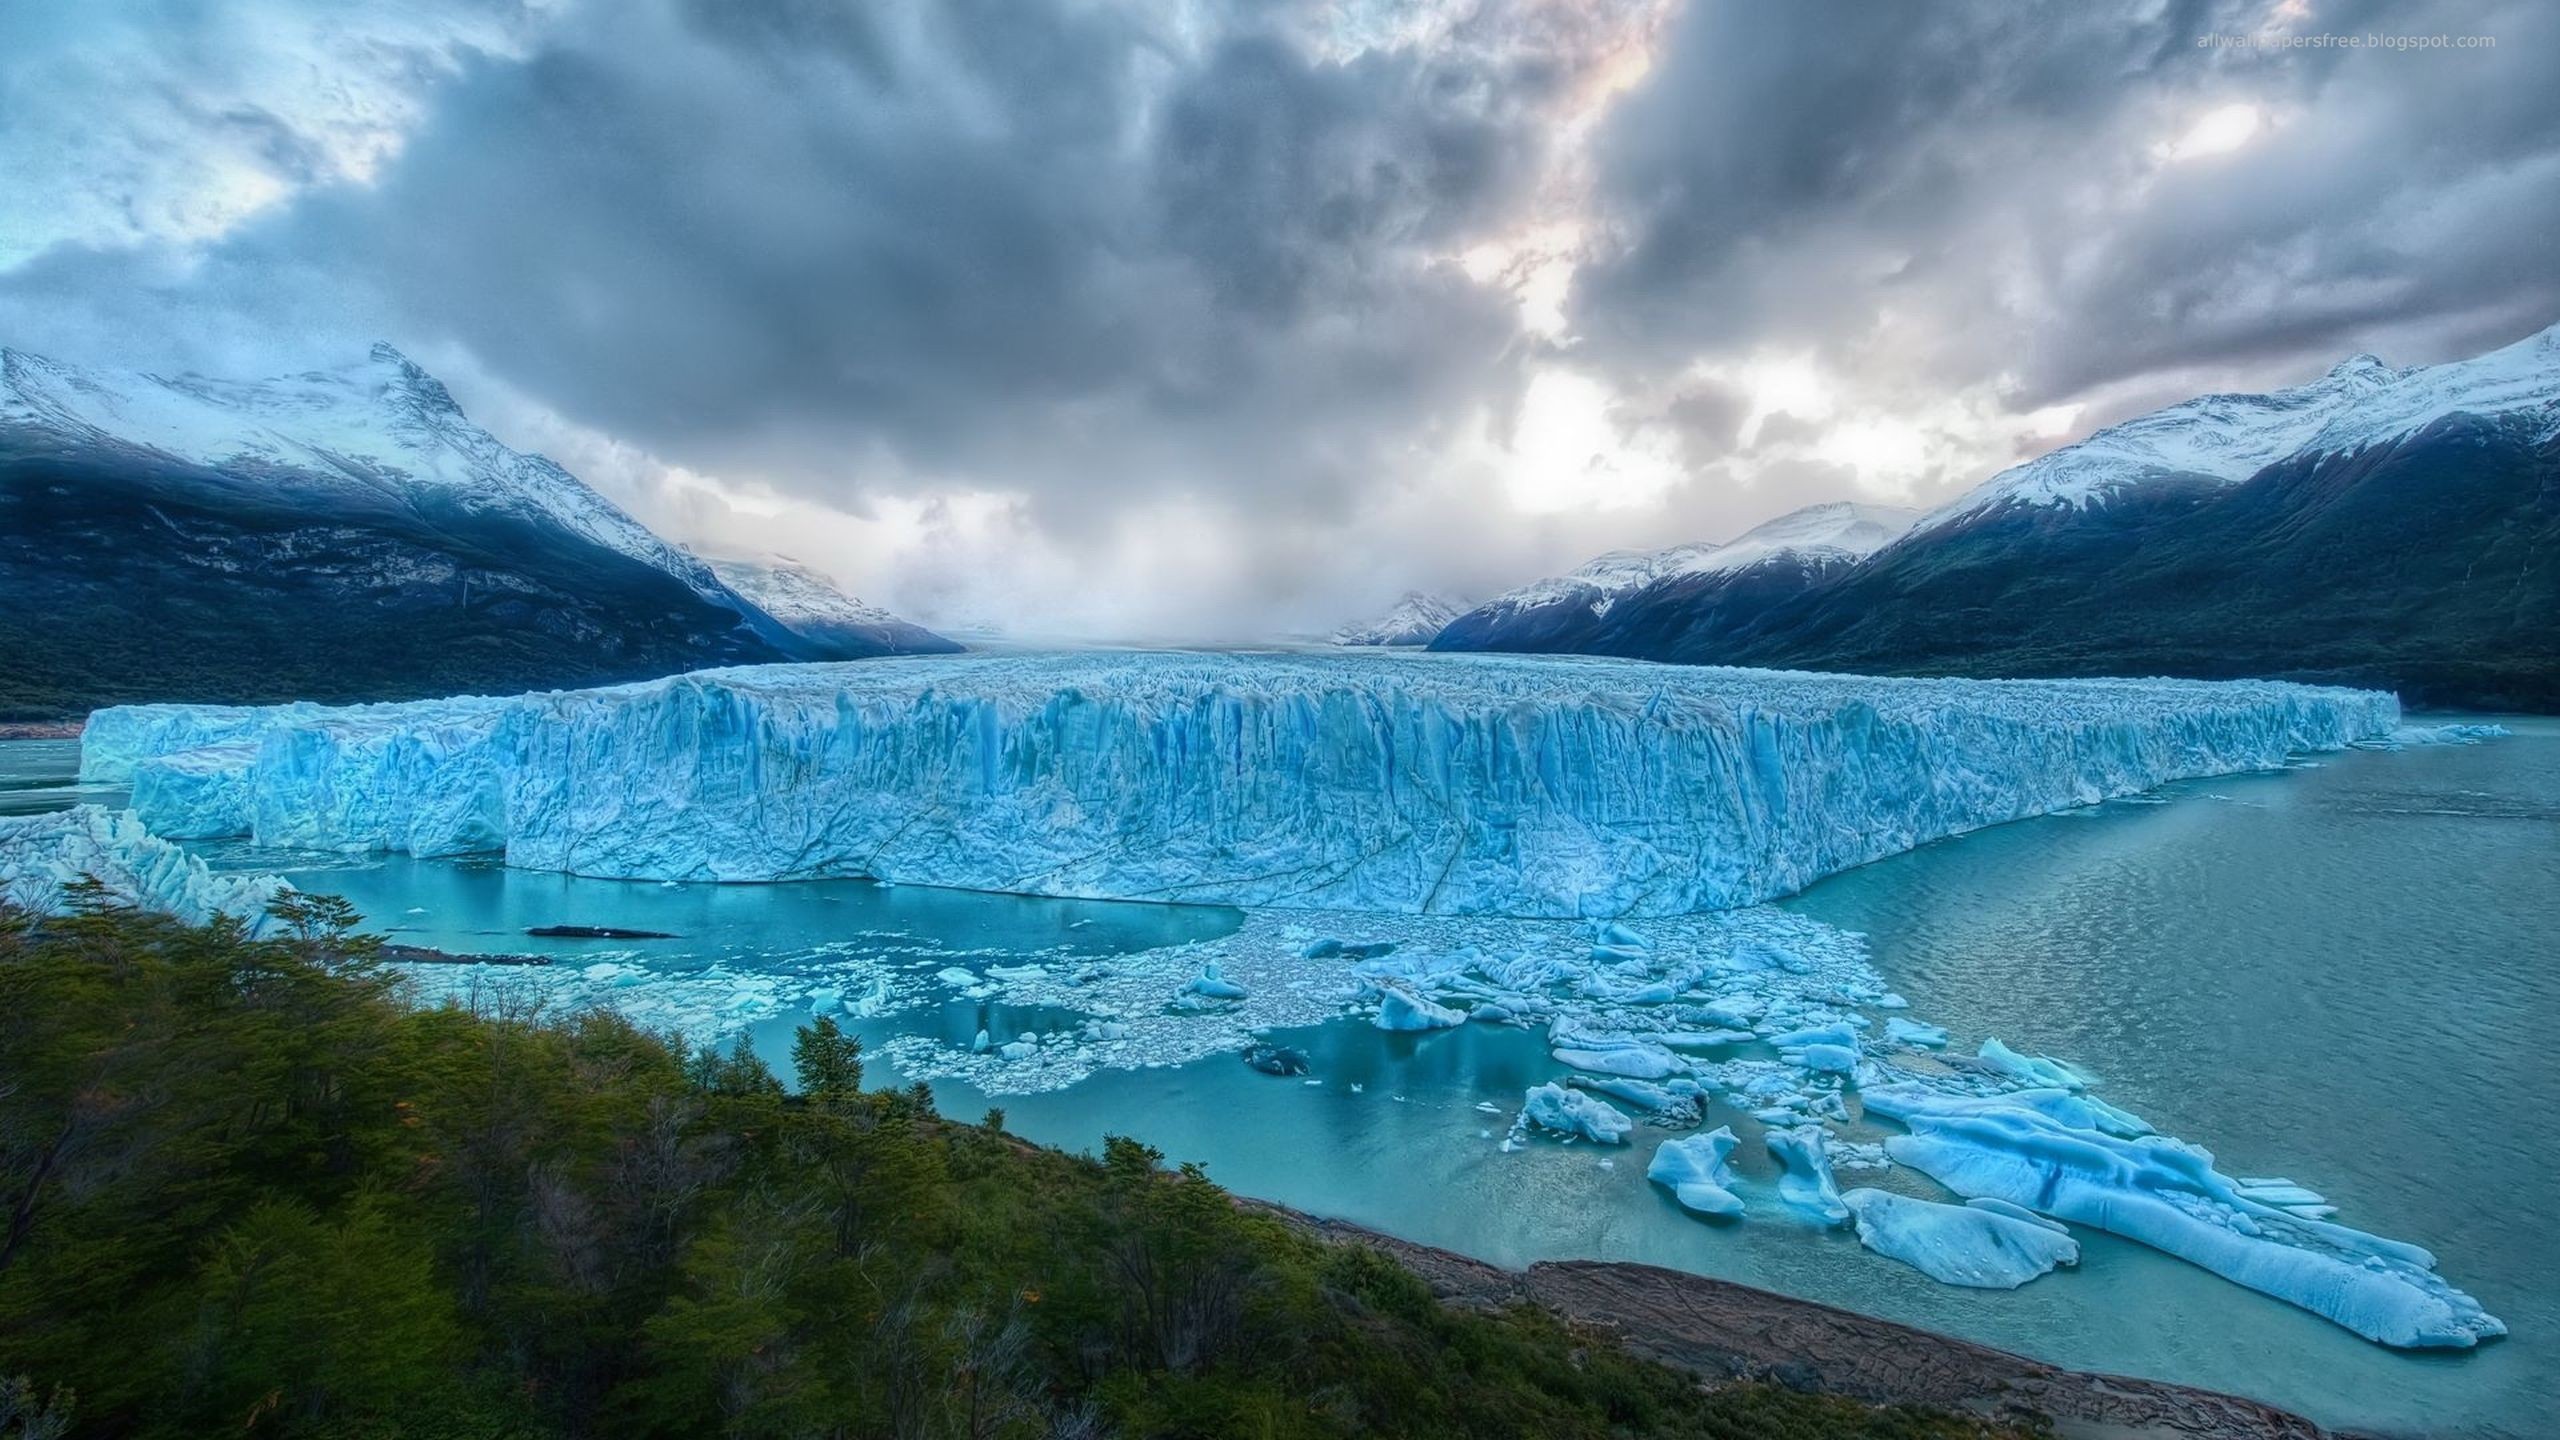 General 2560x1440 landscape glacier nature snow ice mountains Patagonia Perito Moreno Glacier Chile South America